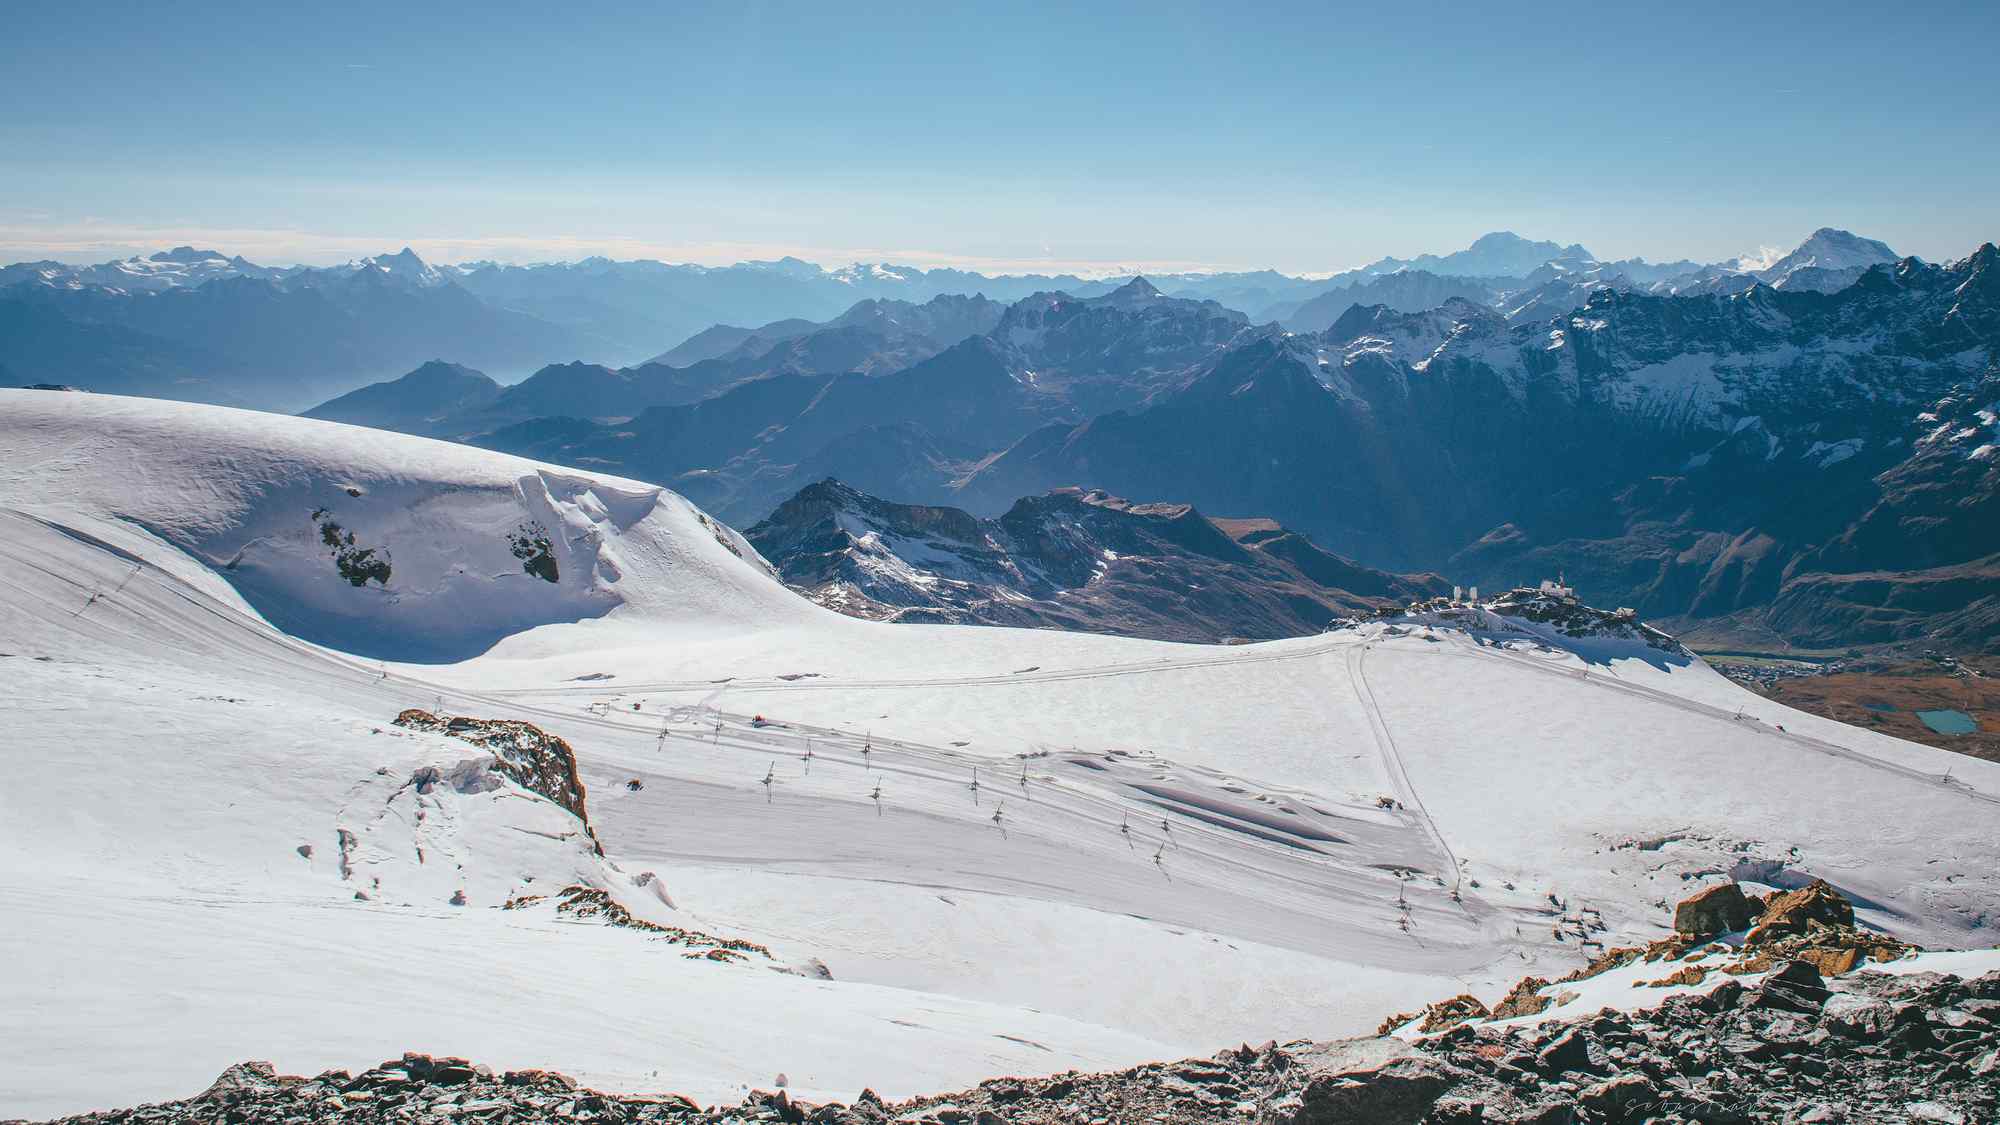 瑞士雪山山顶风景桌面壁纸